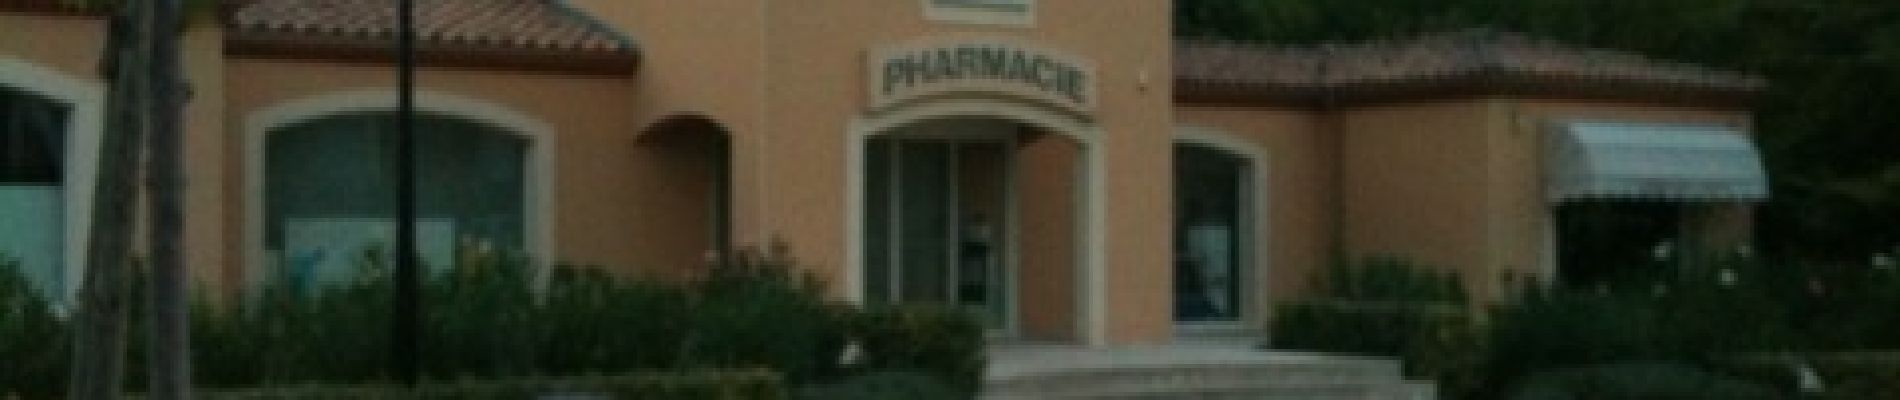 POI Tresques - pharmacie - Photo